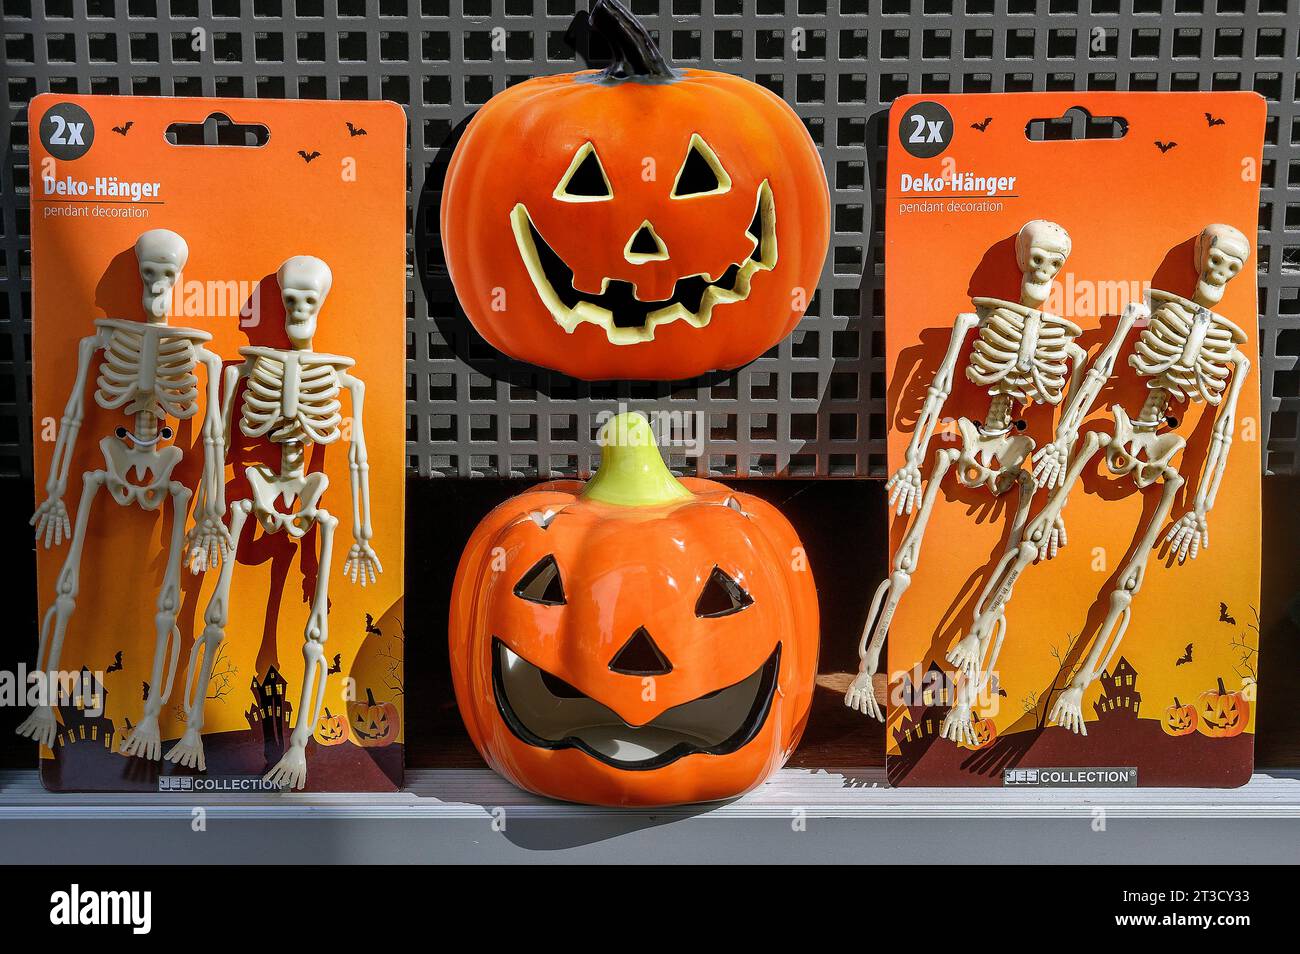 Schaufenster mit Halloween-Artikeln, Skeletten und Kürbissen, Allgaeu, Bayern, Deutschland Stockfoto